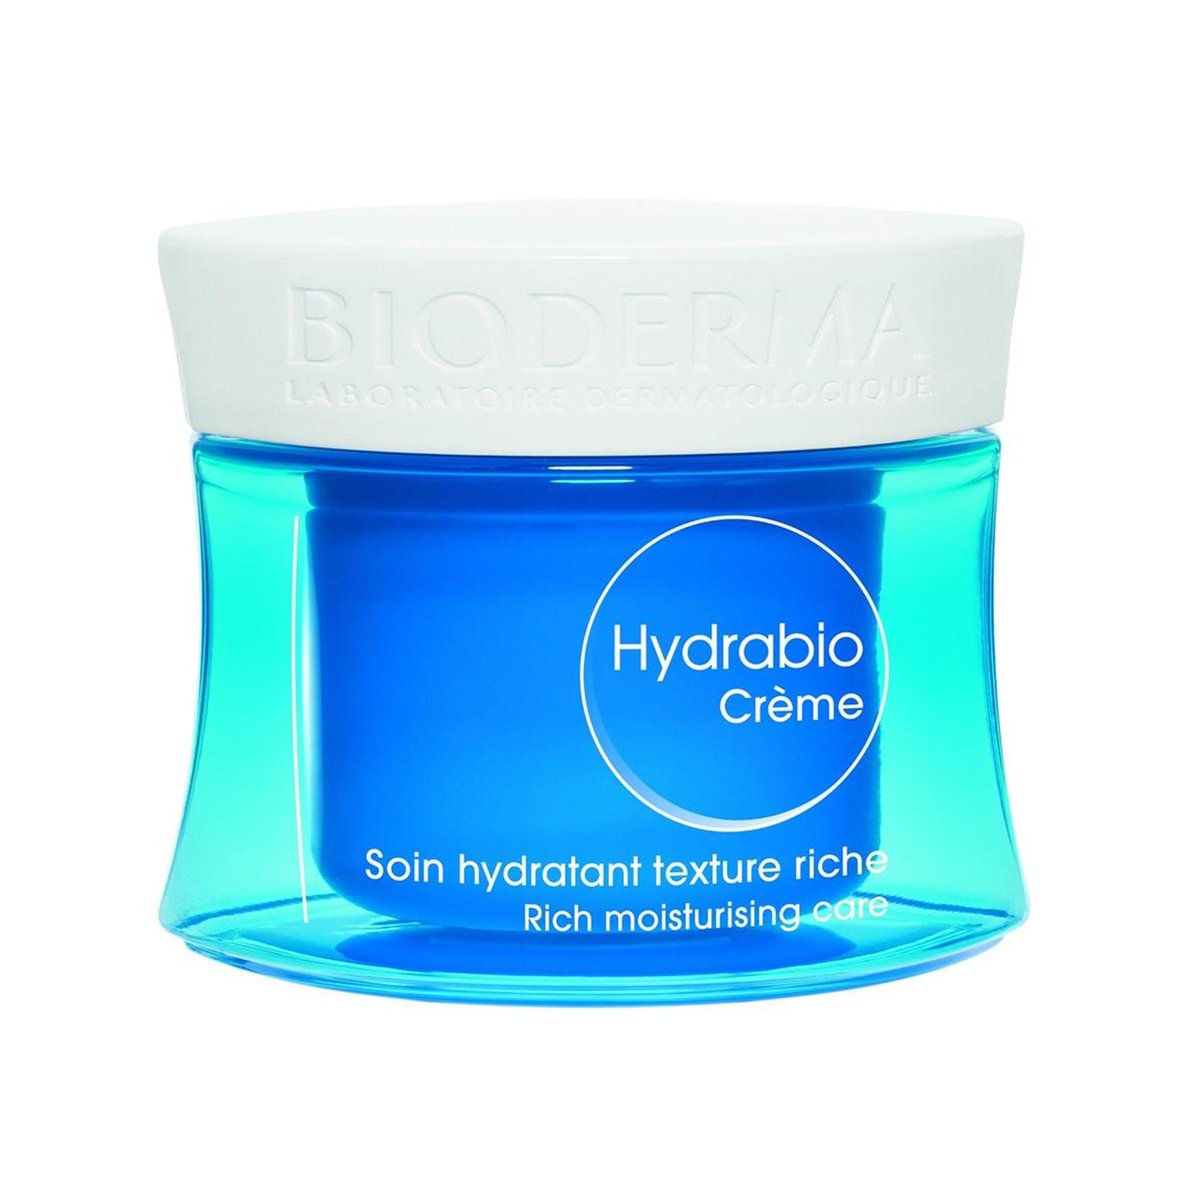 Bioderma Hydrabio Moisturizing Cream 50ml